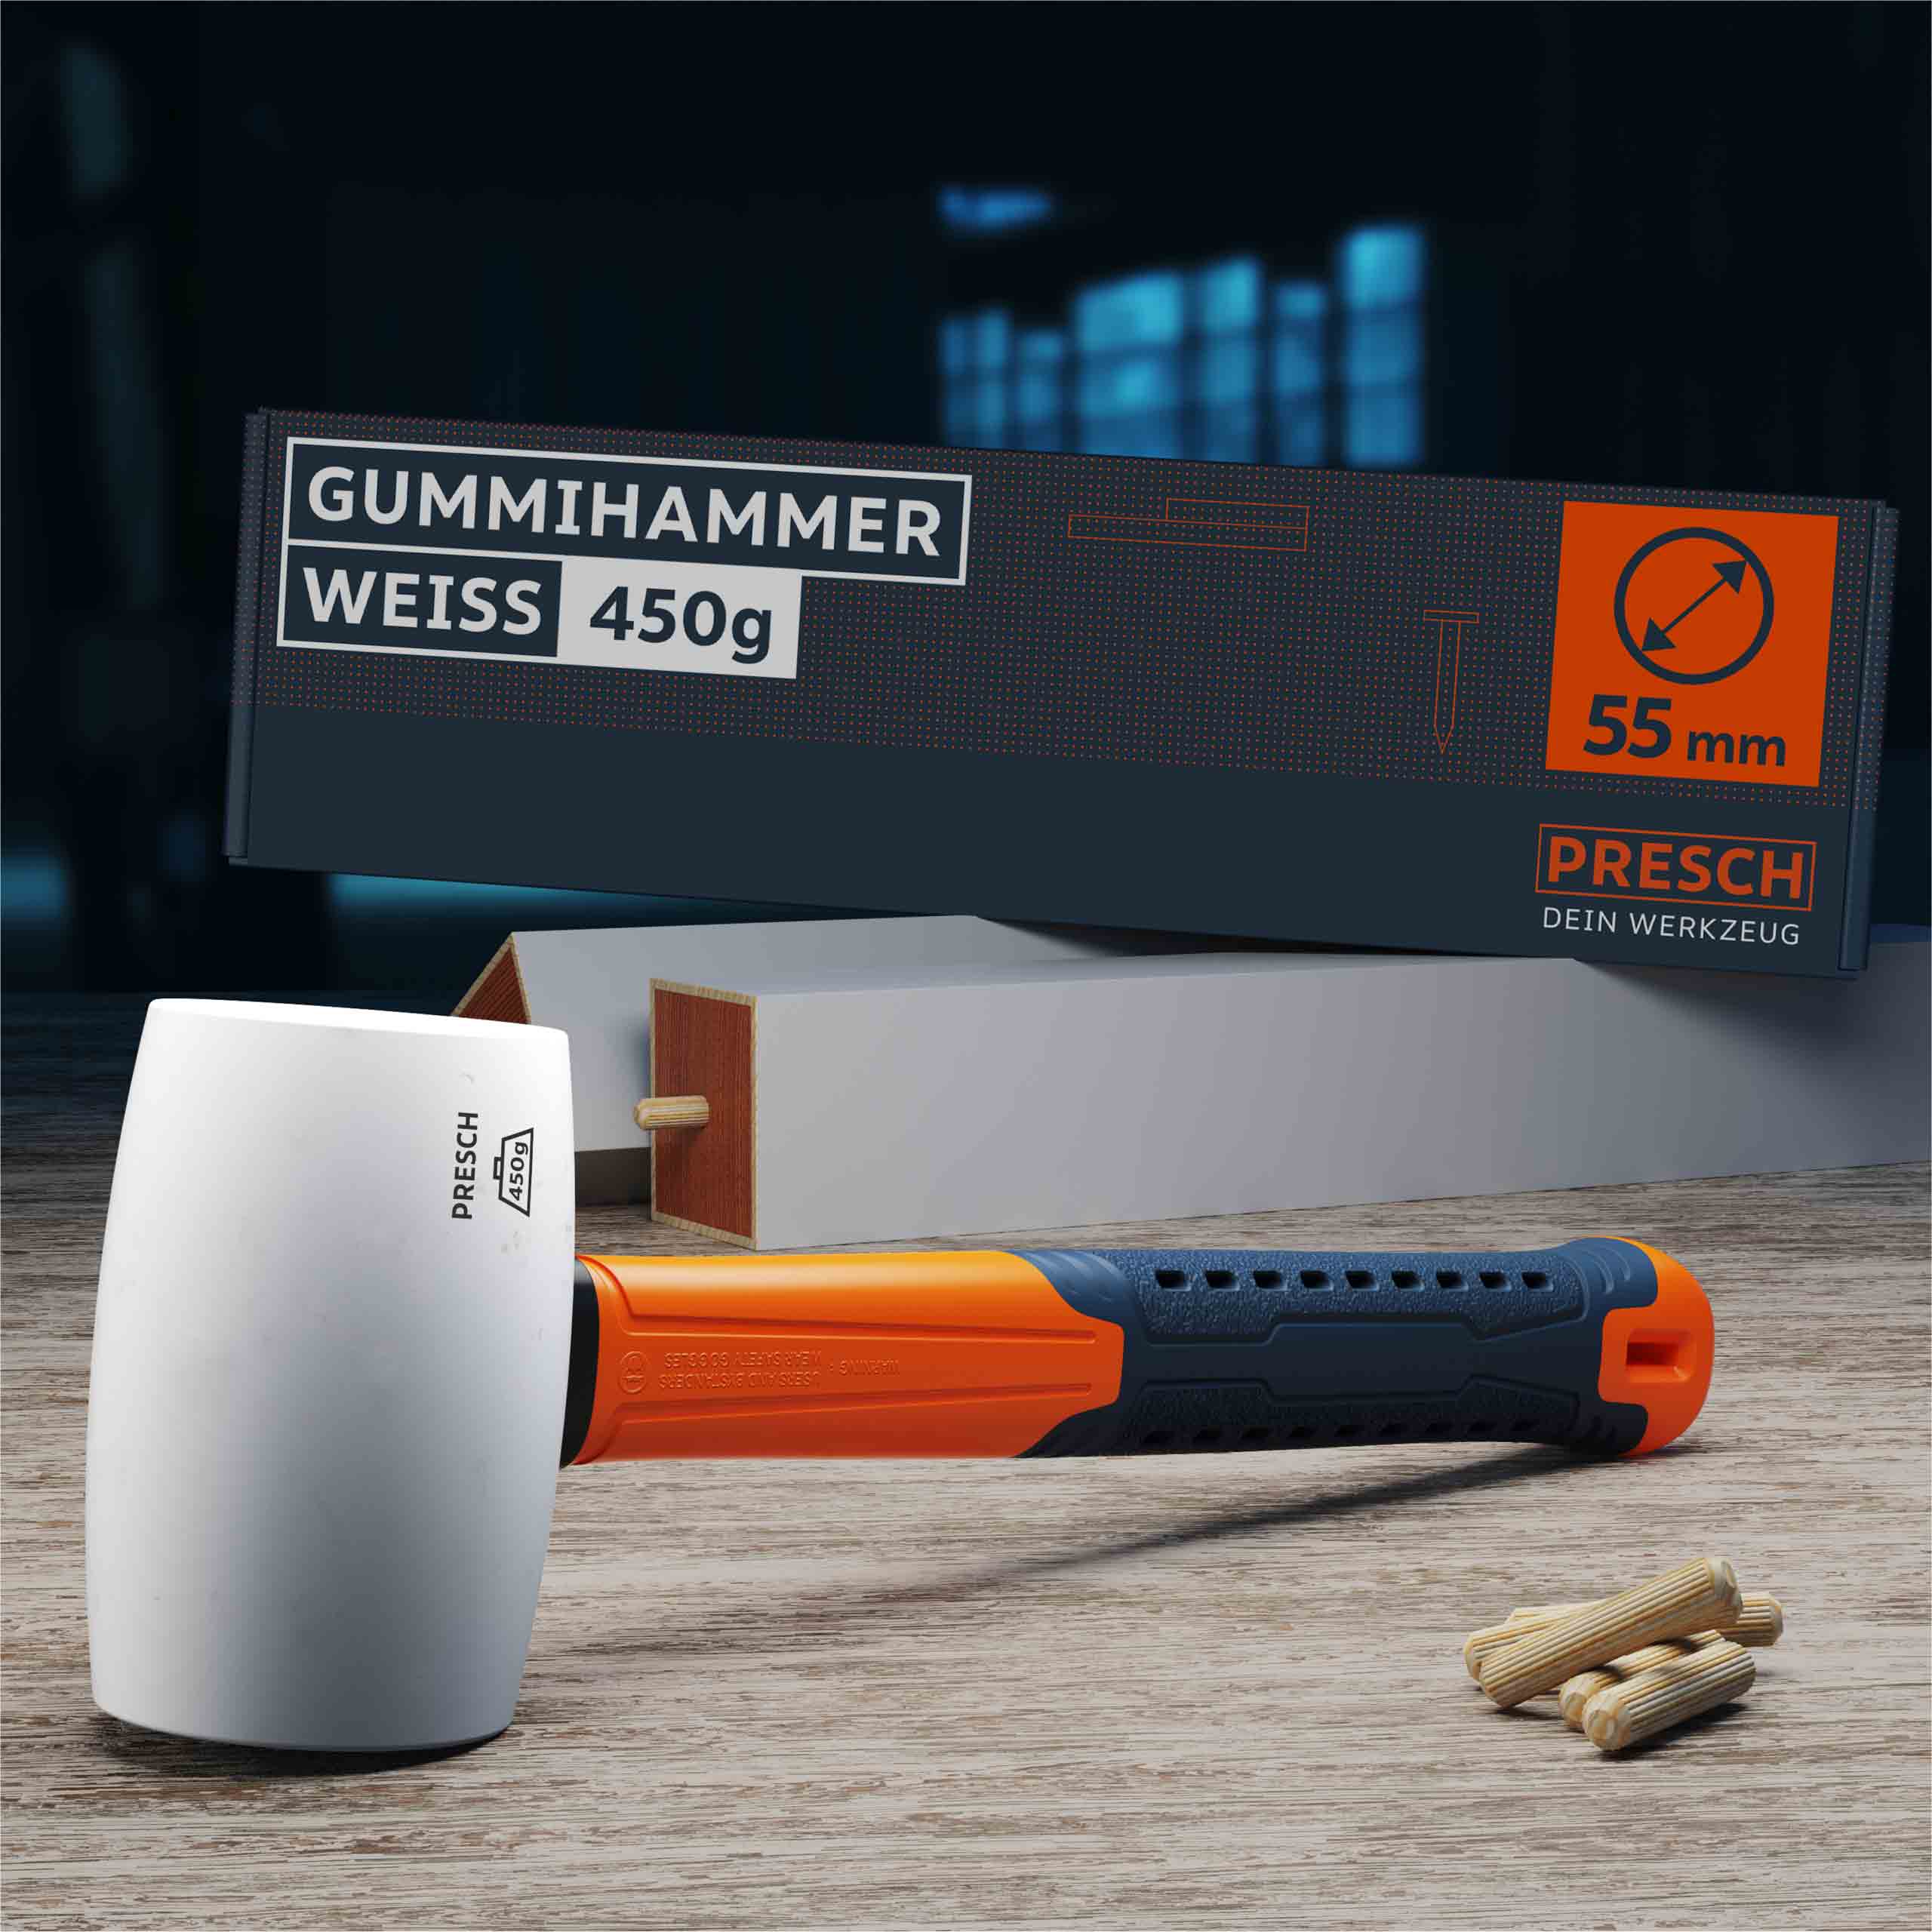 PRESCH Gummihammer weiß 450g mit ergonomischem Griff und Holzdübel auf Werkbank.